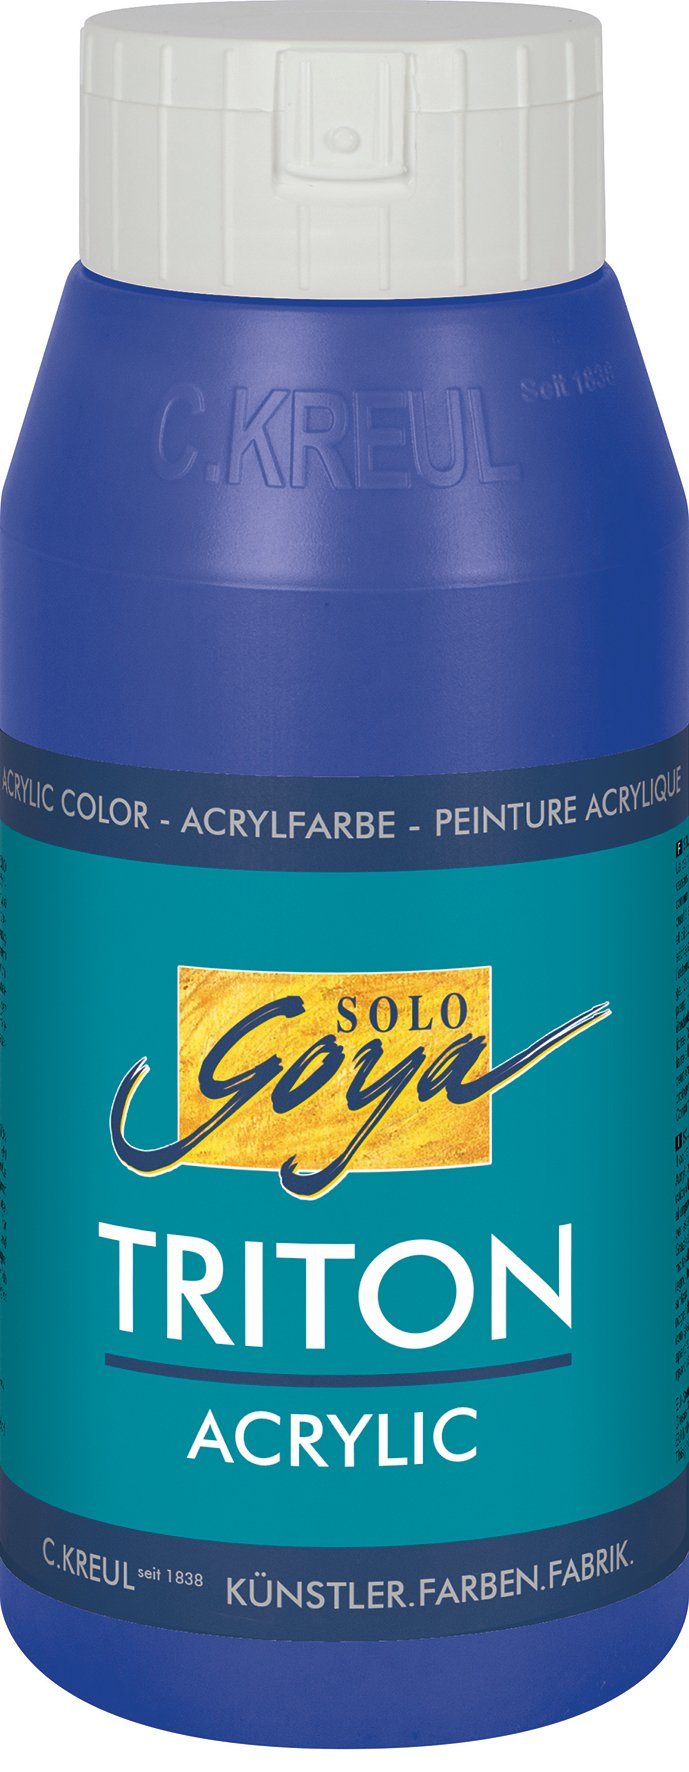 Acrylic, Acrylfarbe 750 Goya Triton Ultramarinblau Kreul ml Solo